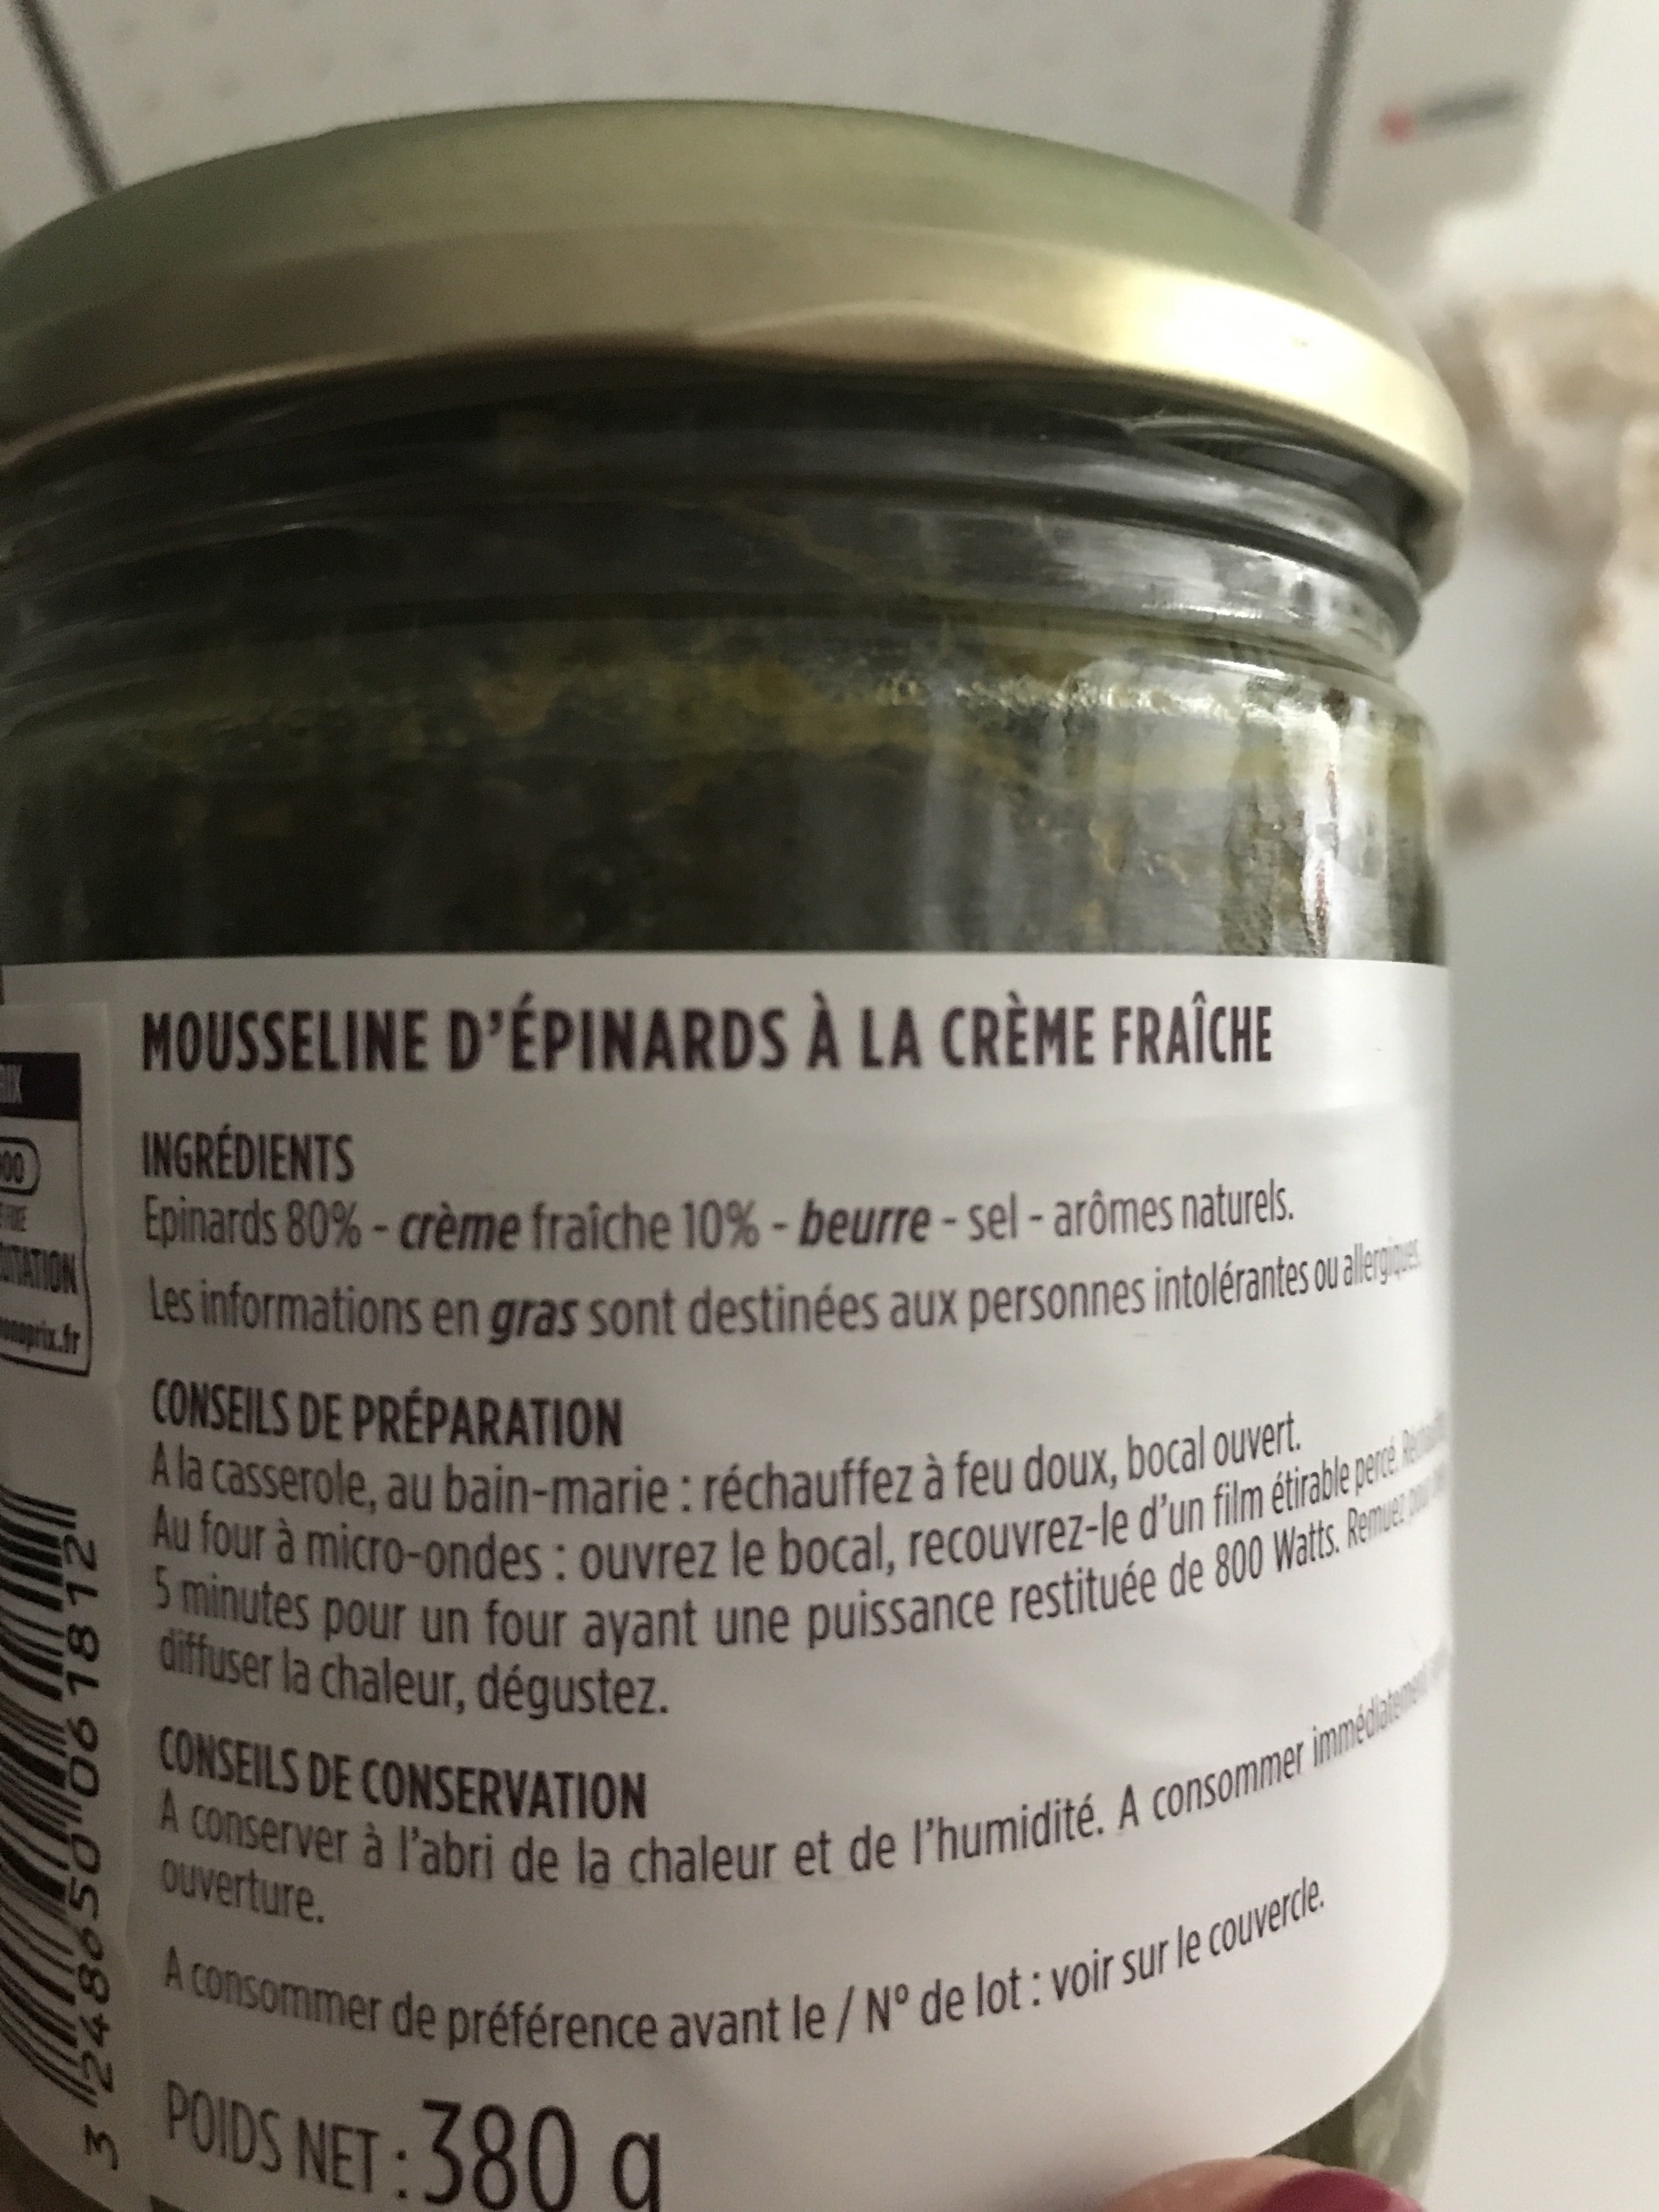 Mousseline d'épinards à la crème fraîche - Product - fr